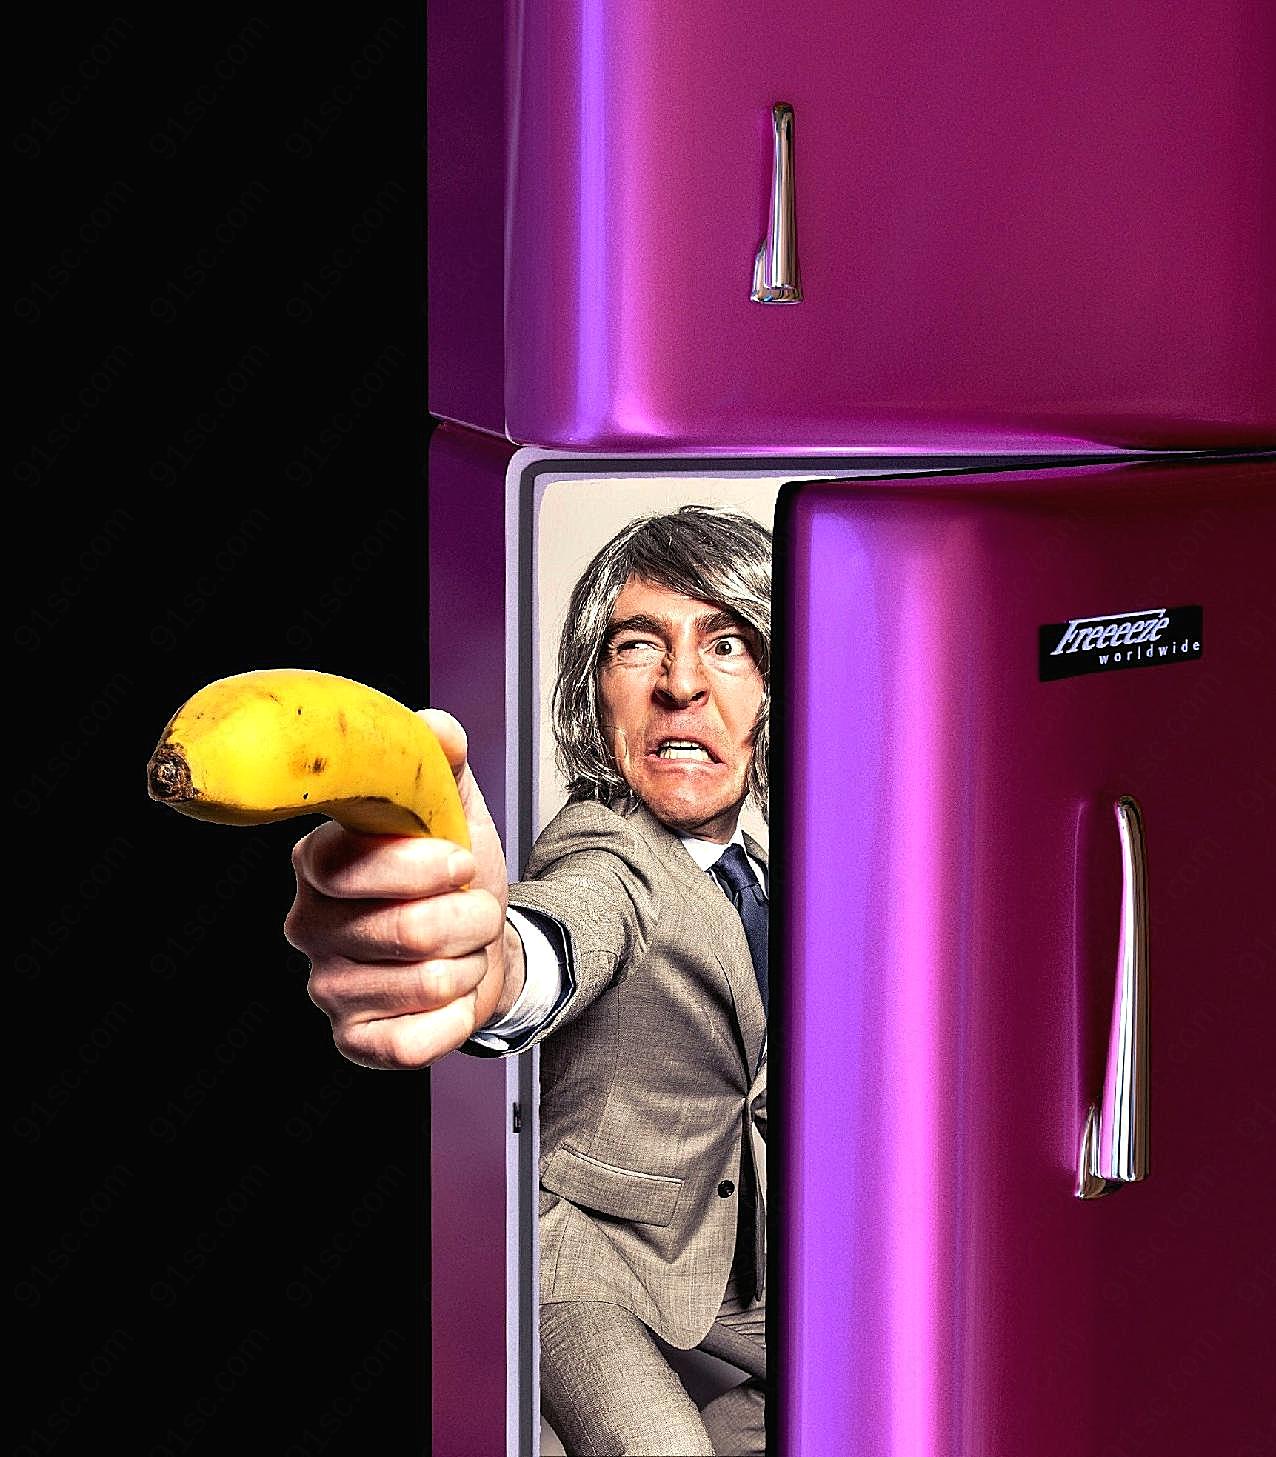 冰箱另类广告创意图片创意设计图片